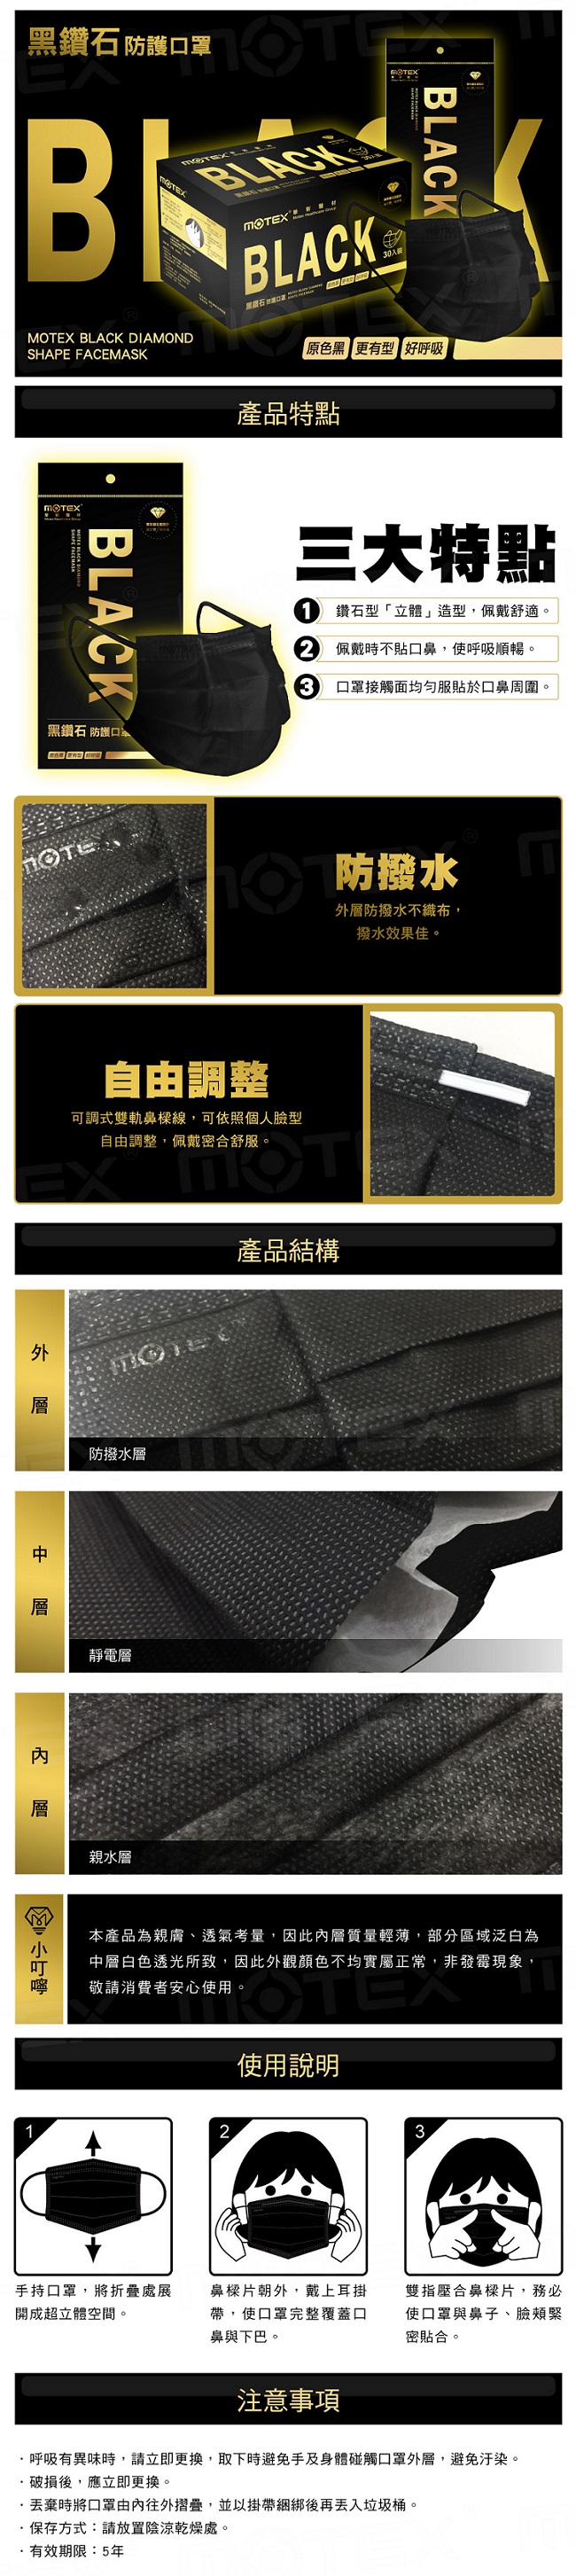 MOTEX黑鑽石防護口罩(3片/包,10包/盒)